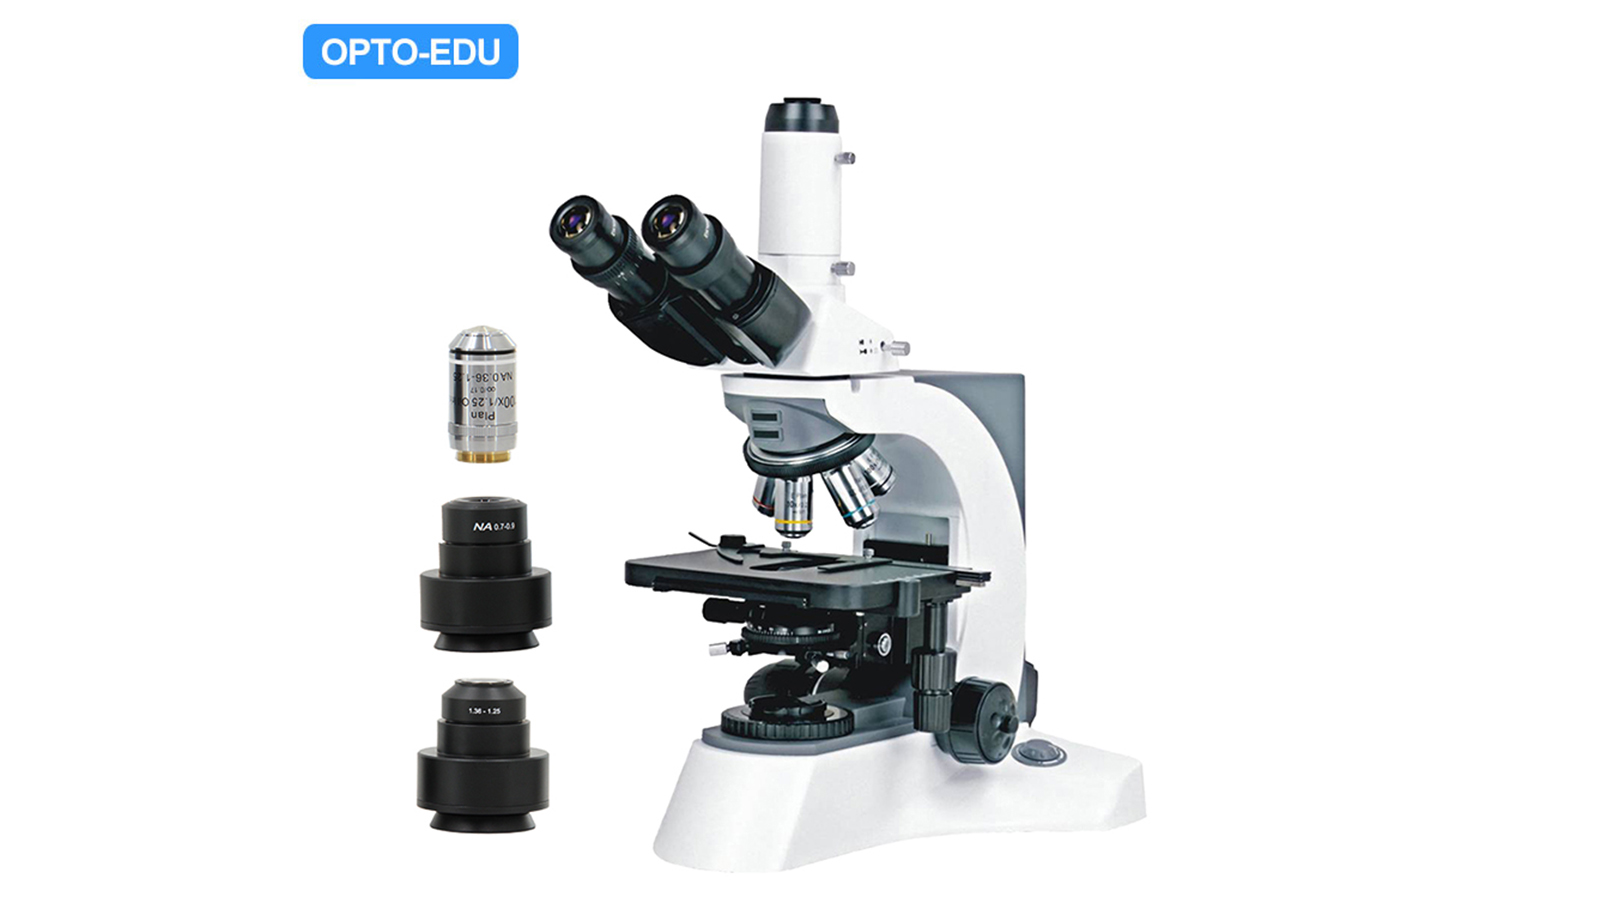 Microscopio profesional de campo oscuro A10.1018